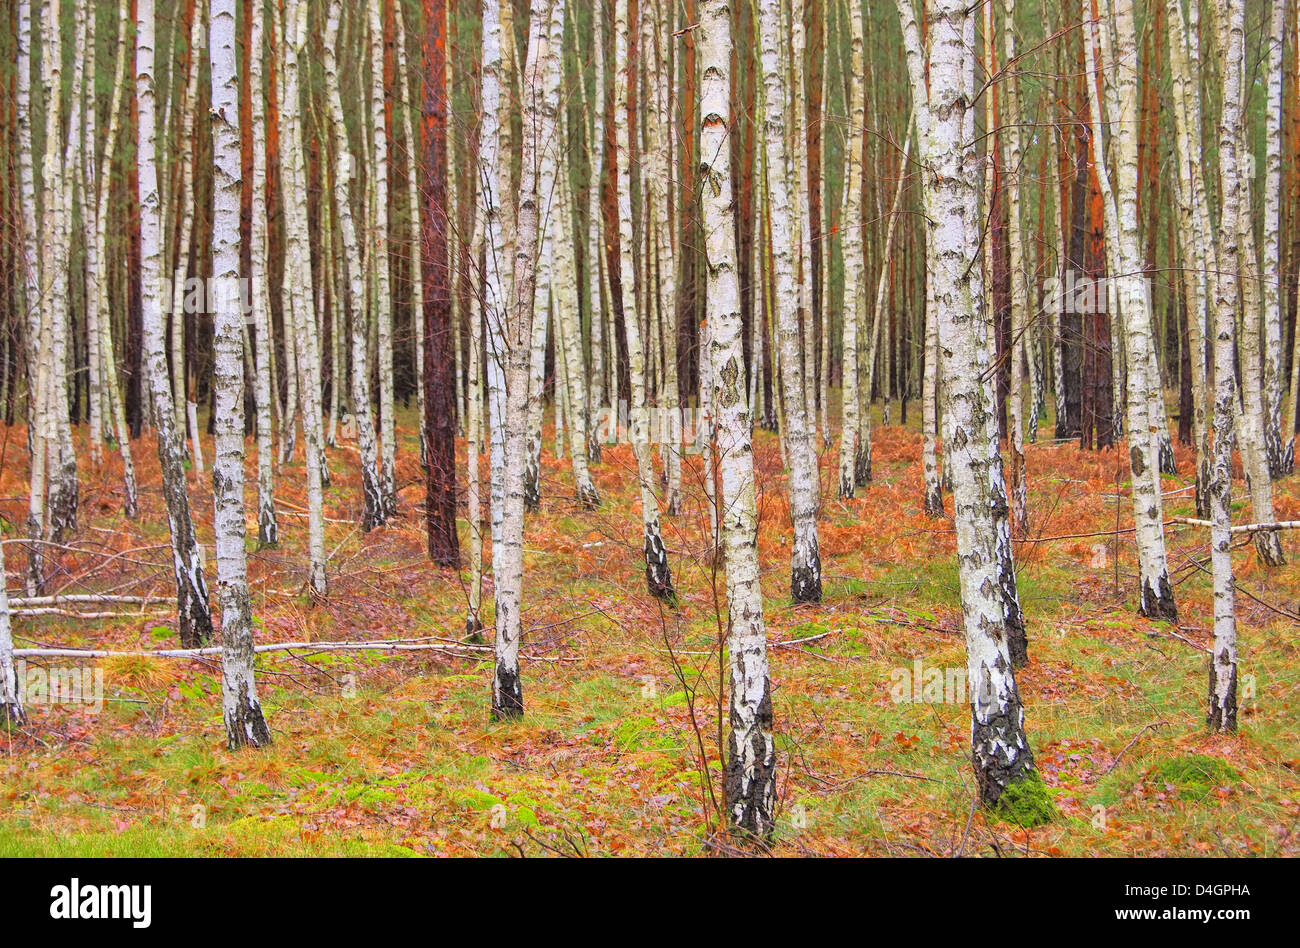 Birkenwald - birch forest 01 Stock Photo